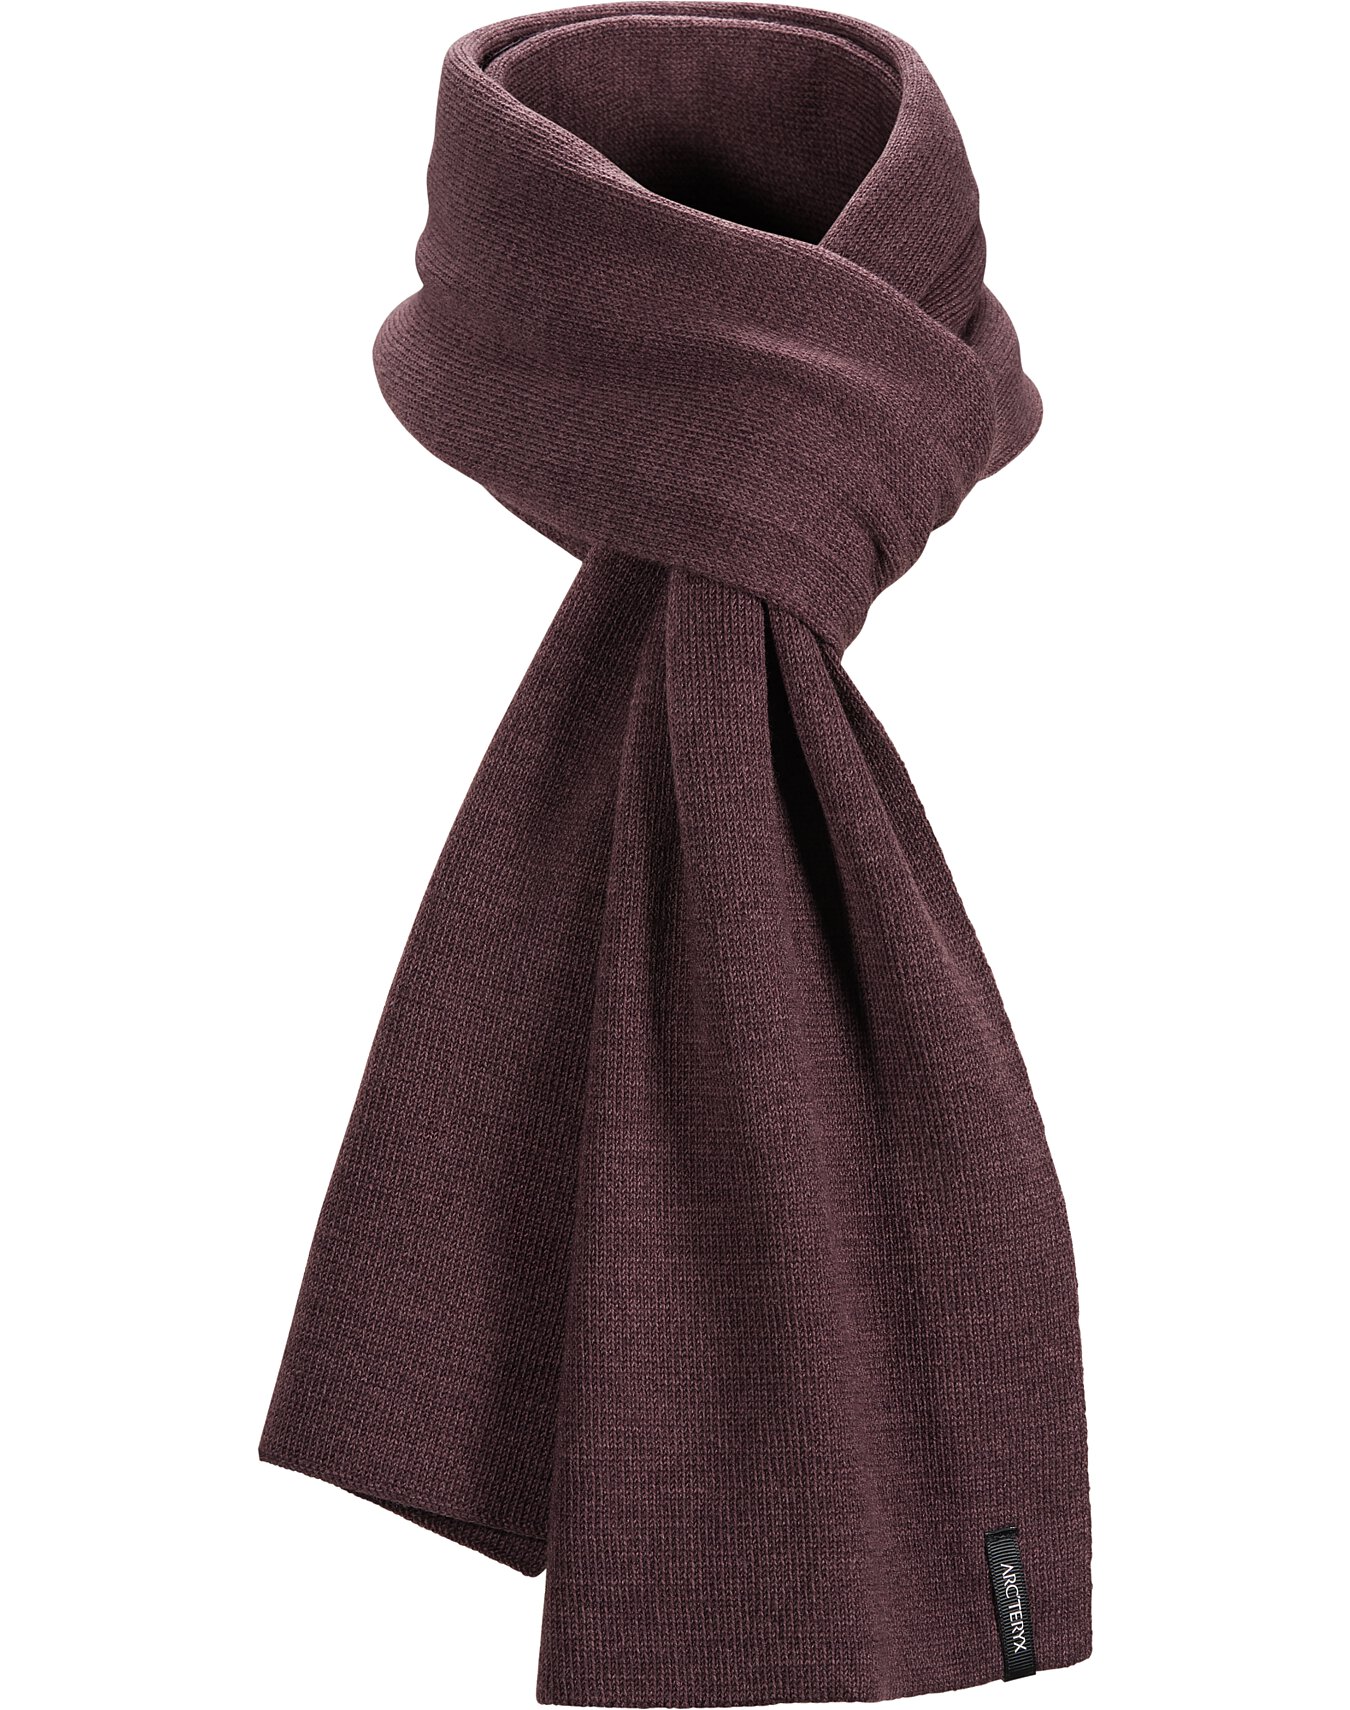 maroon scarf